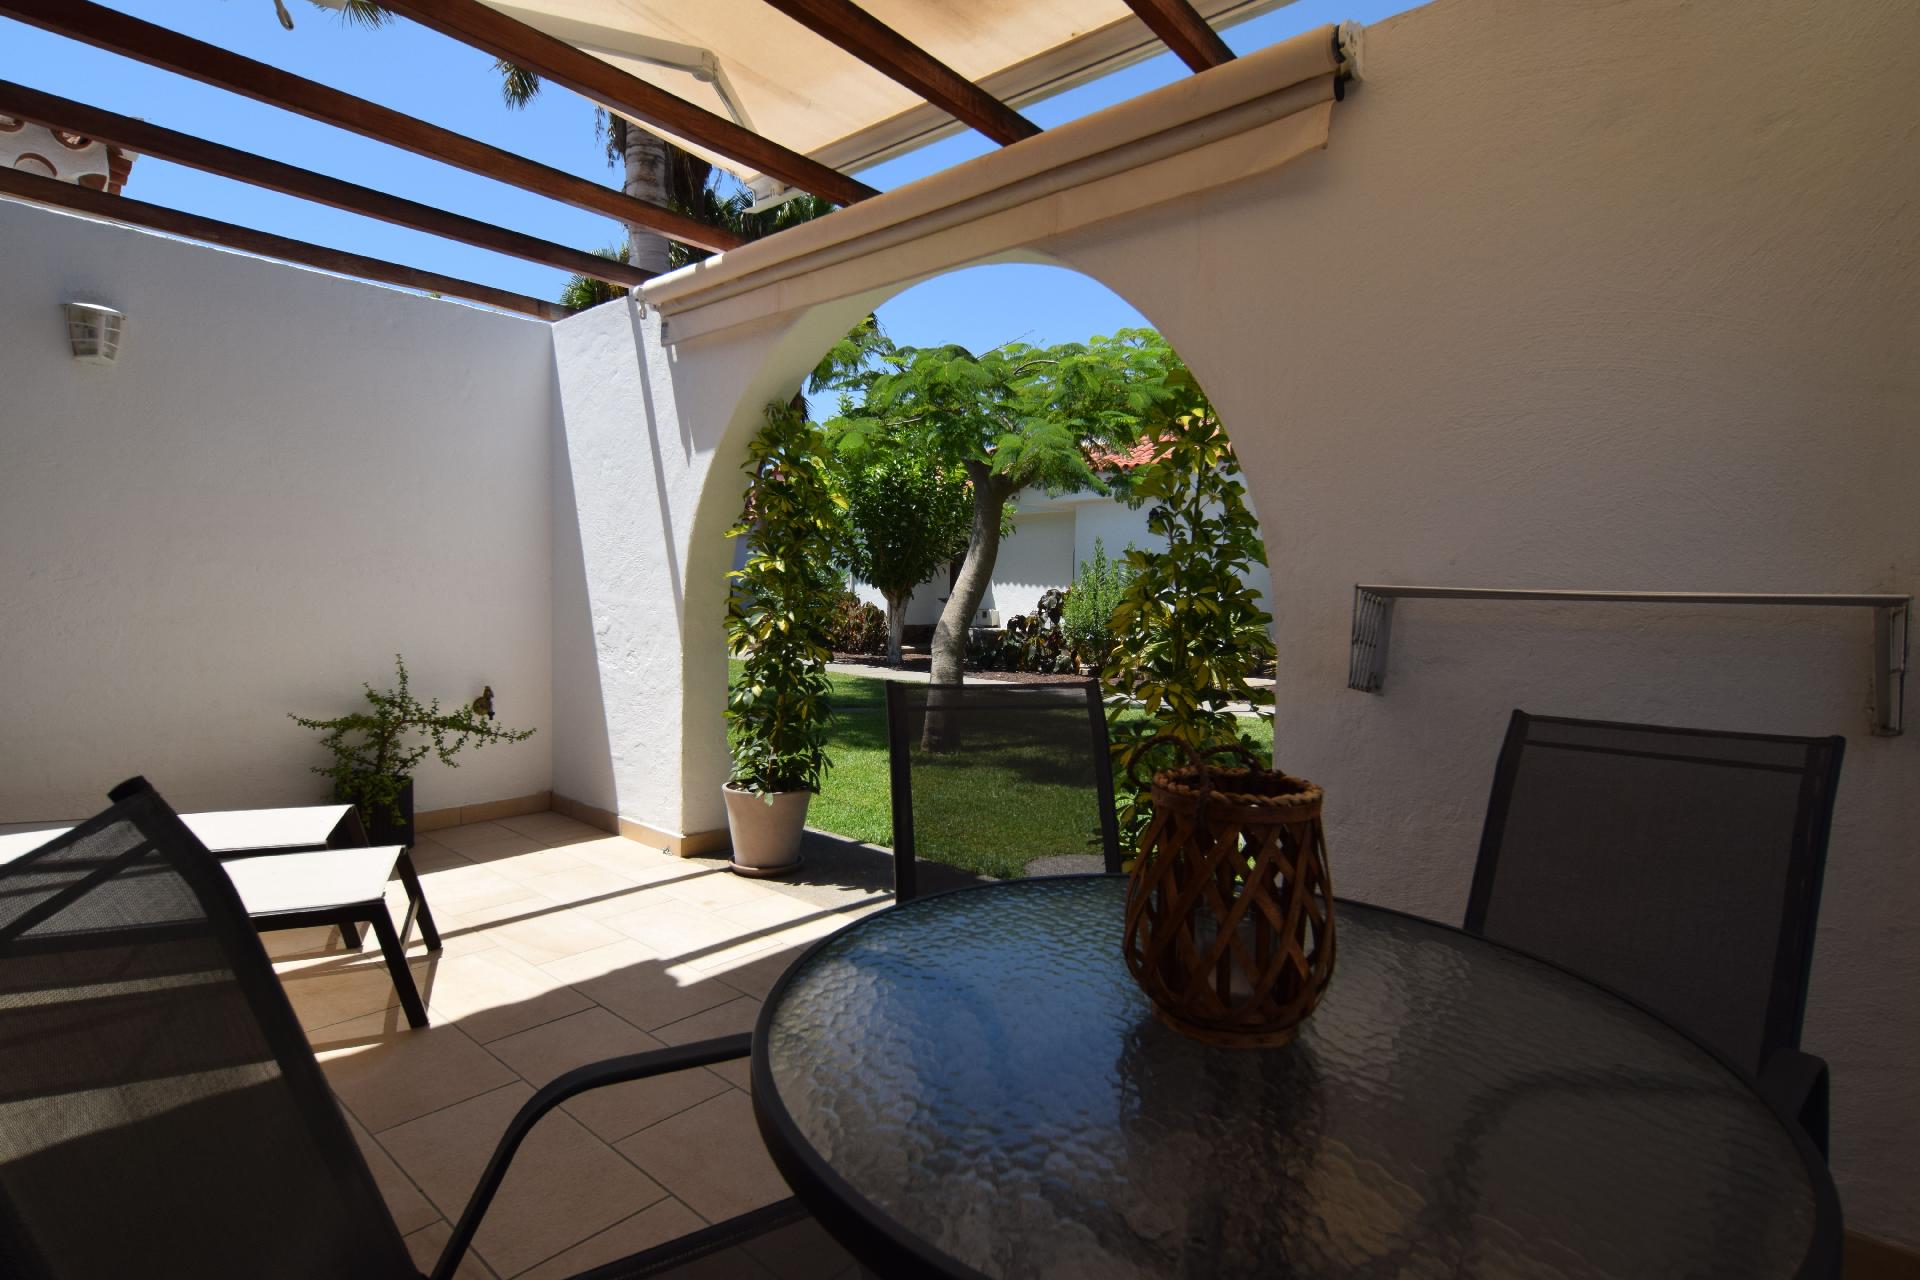 Ferienwohnung für 4 Personen ca. 40 m² i Ferienhaus in Spanien